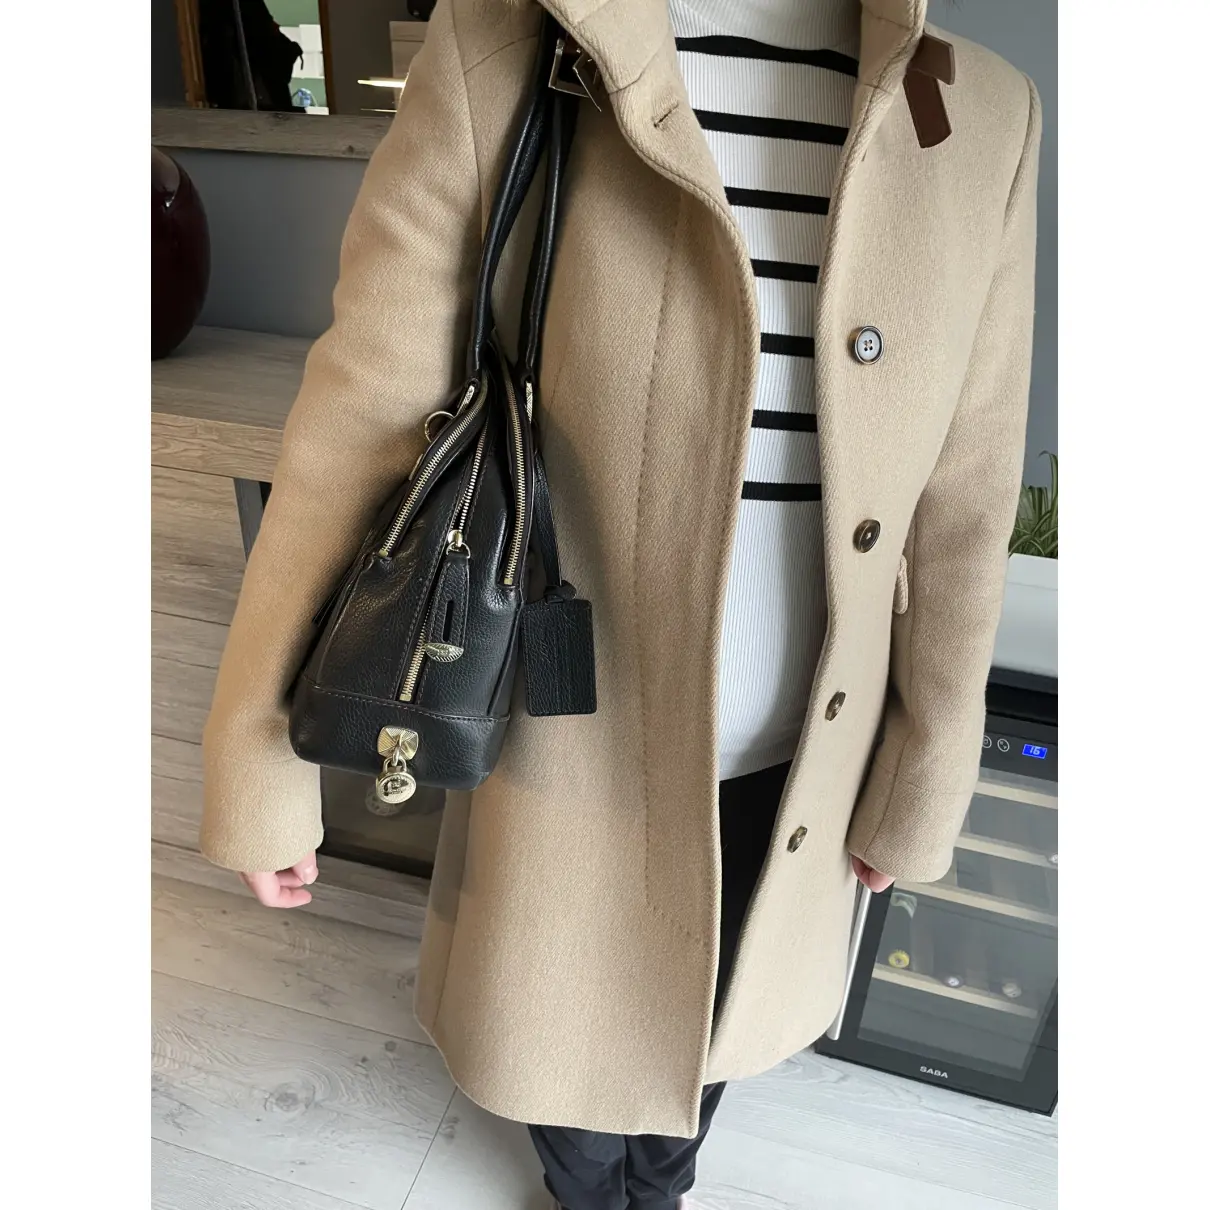 Mademoiselle Adjani leather handbag Lancel